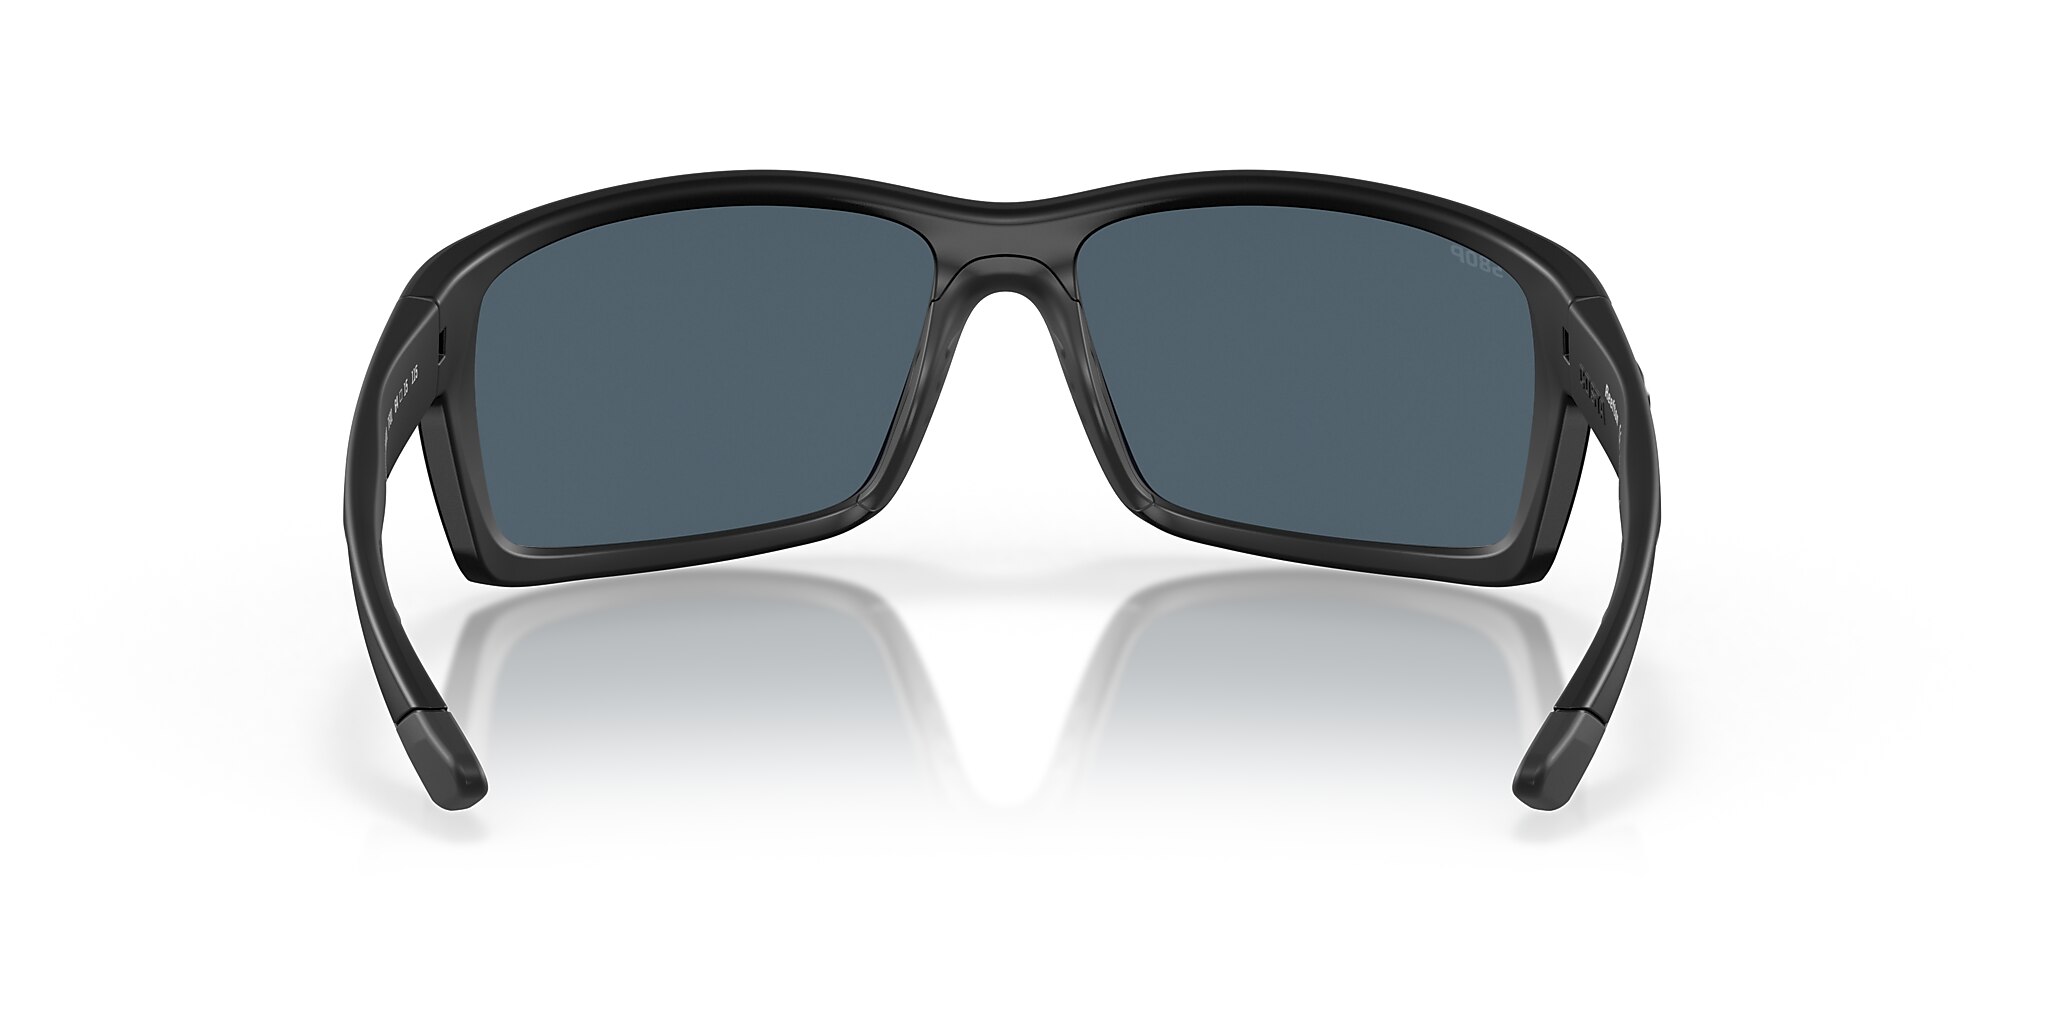 Reefton Polarized Sunglasses in Gray | Costa Del Mar®